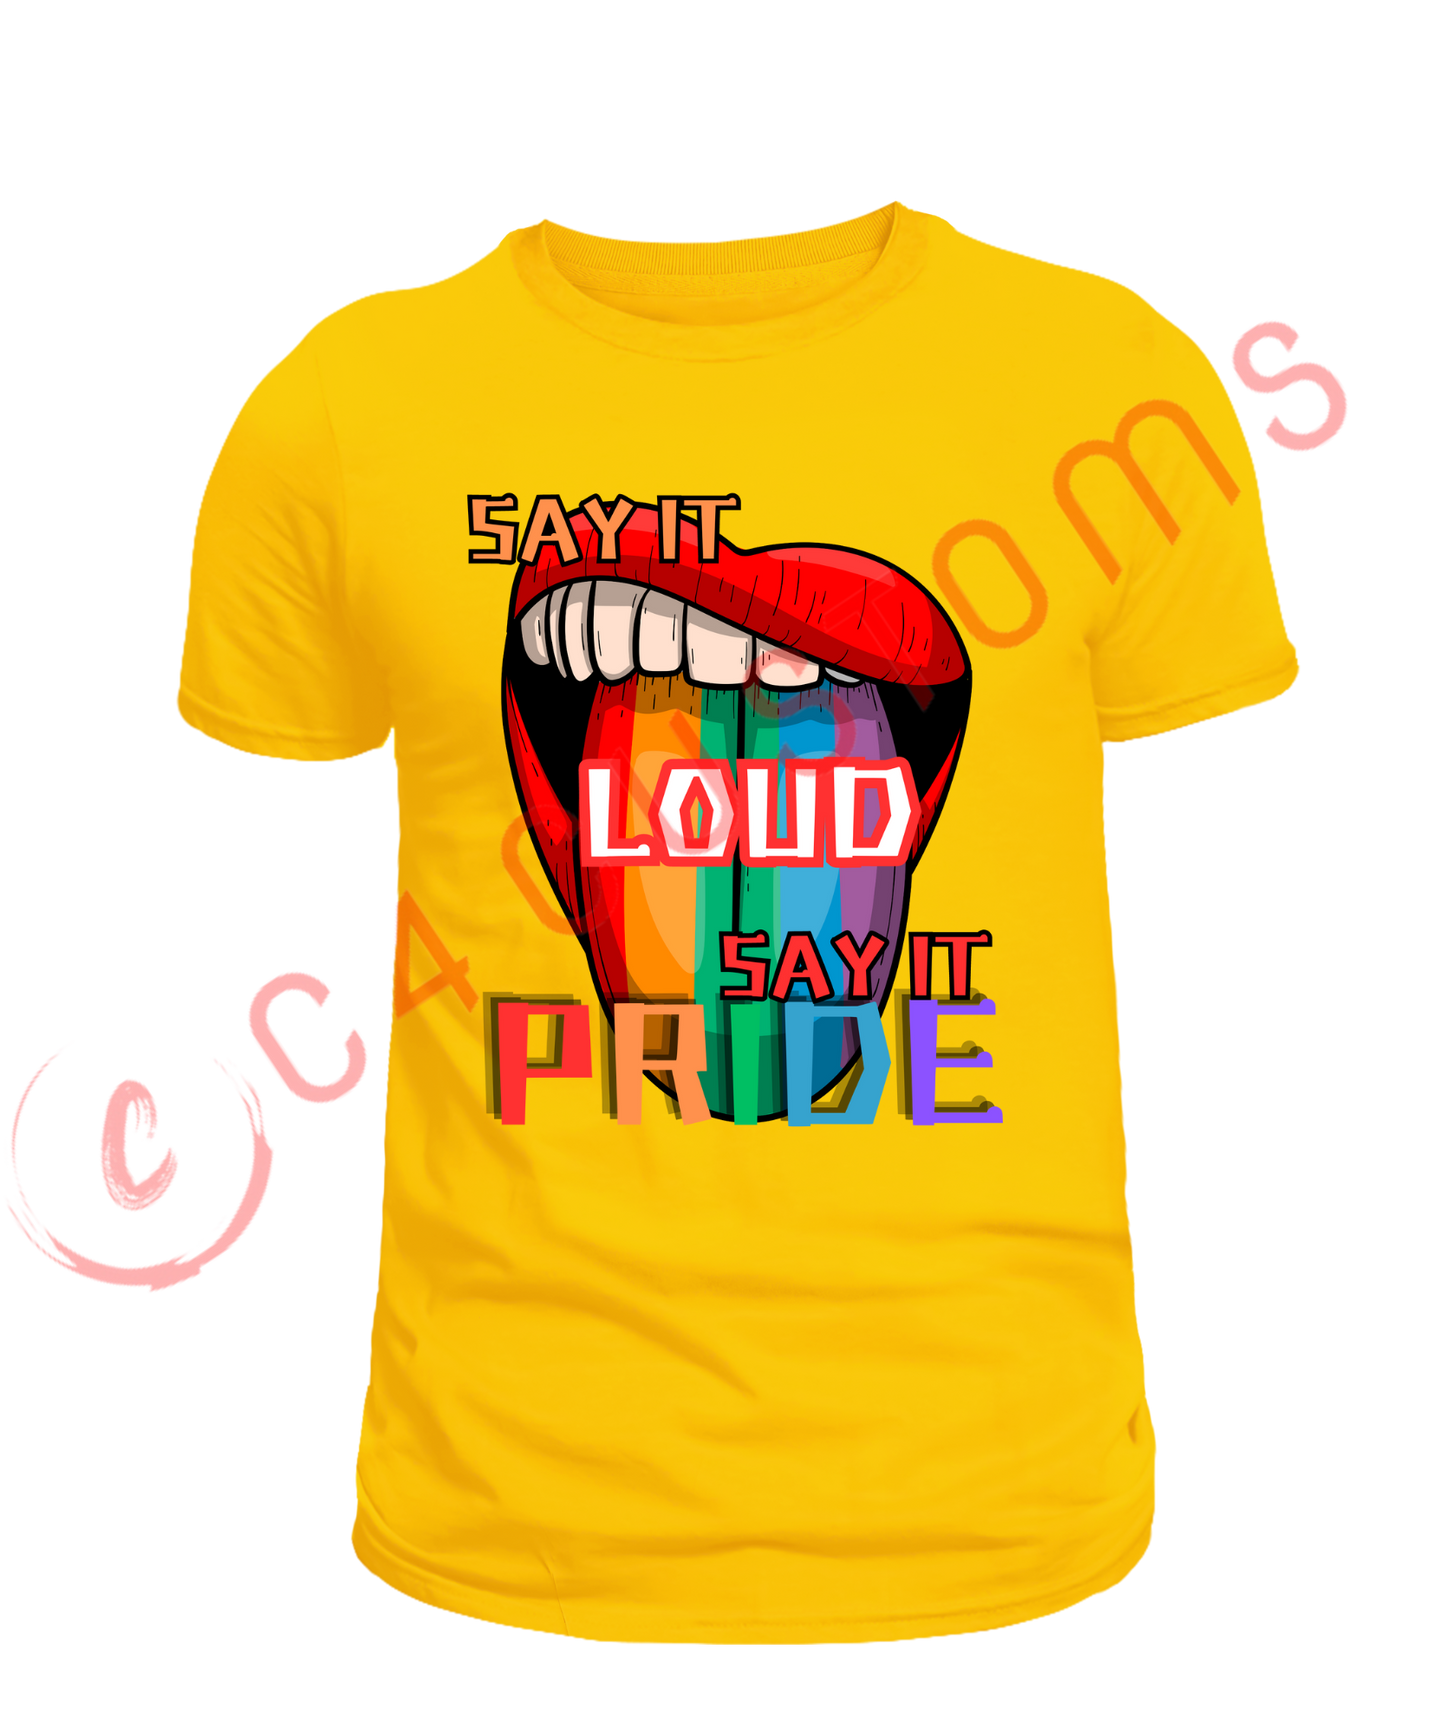 Say It Loud /Say It Pride